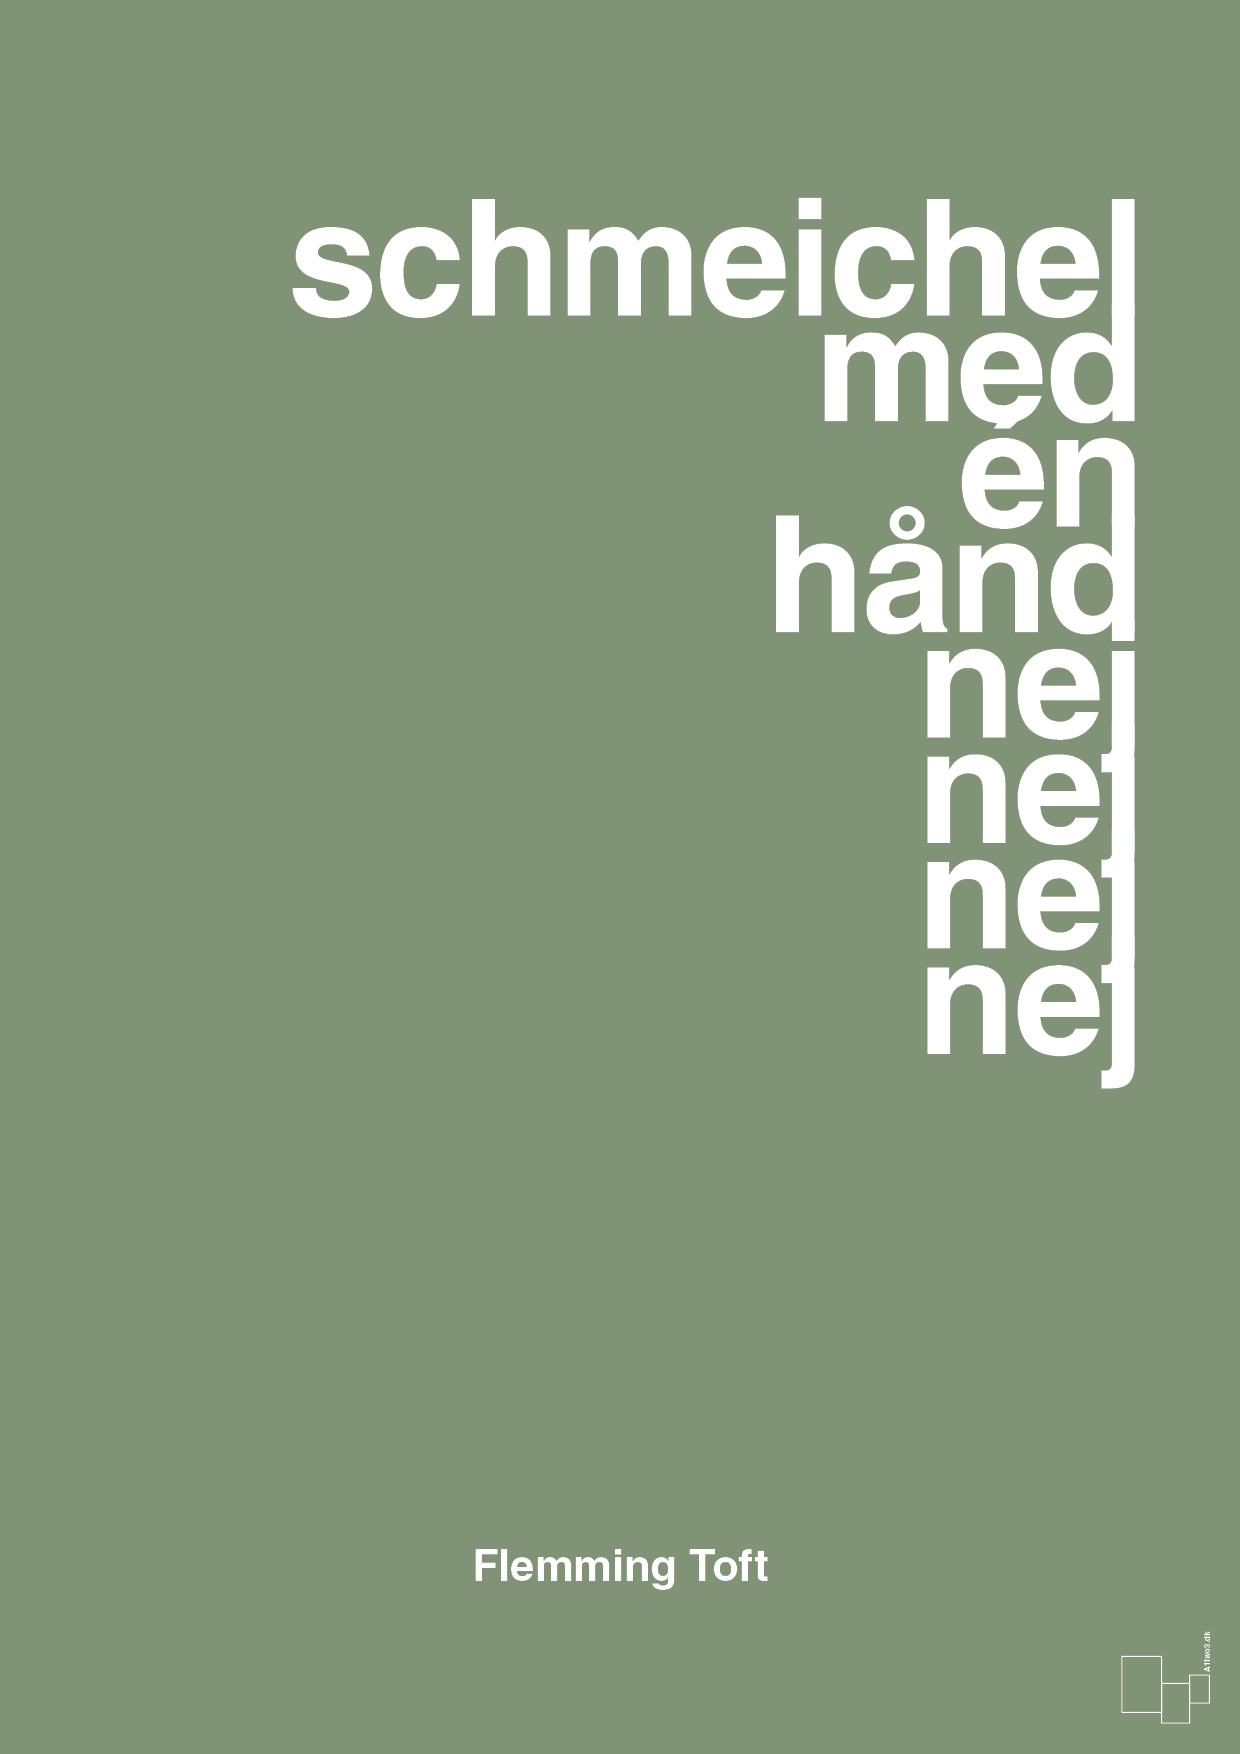 schmeichel med én hånd nej nej nej nej - Plakat med Citater i Jade